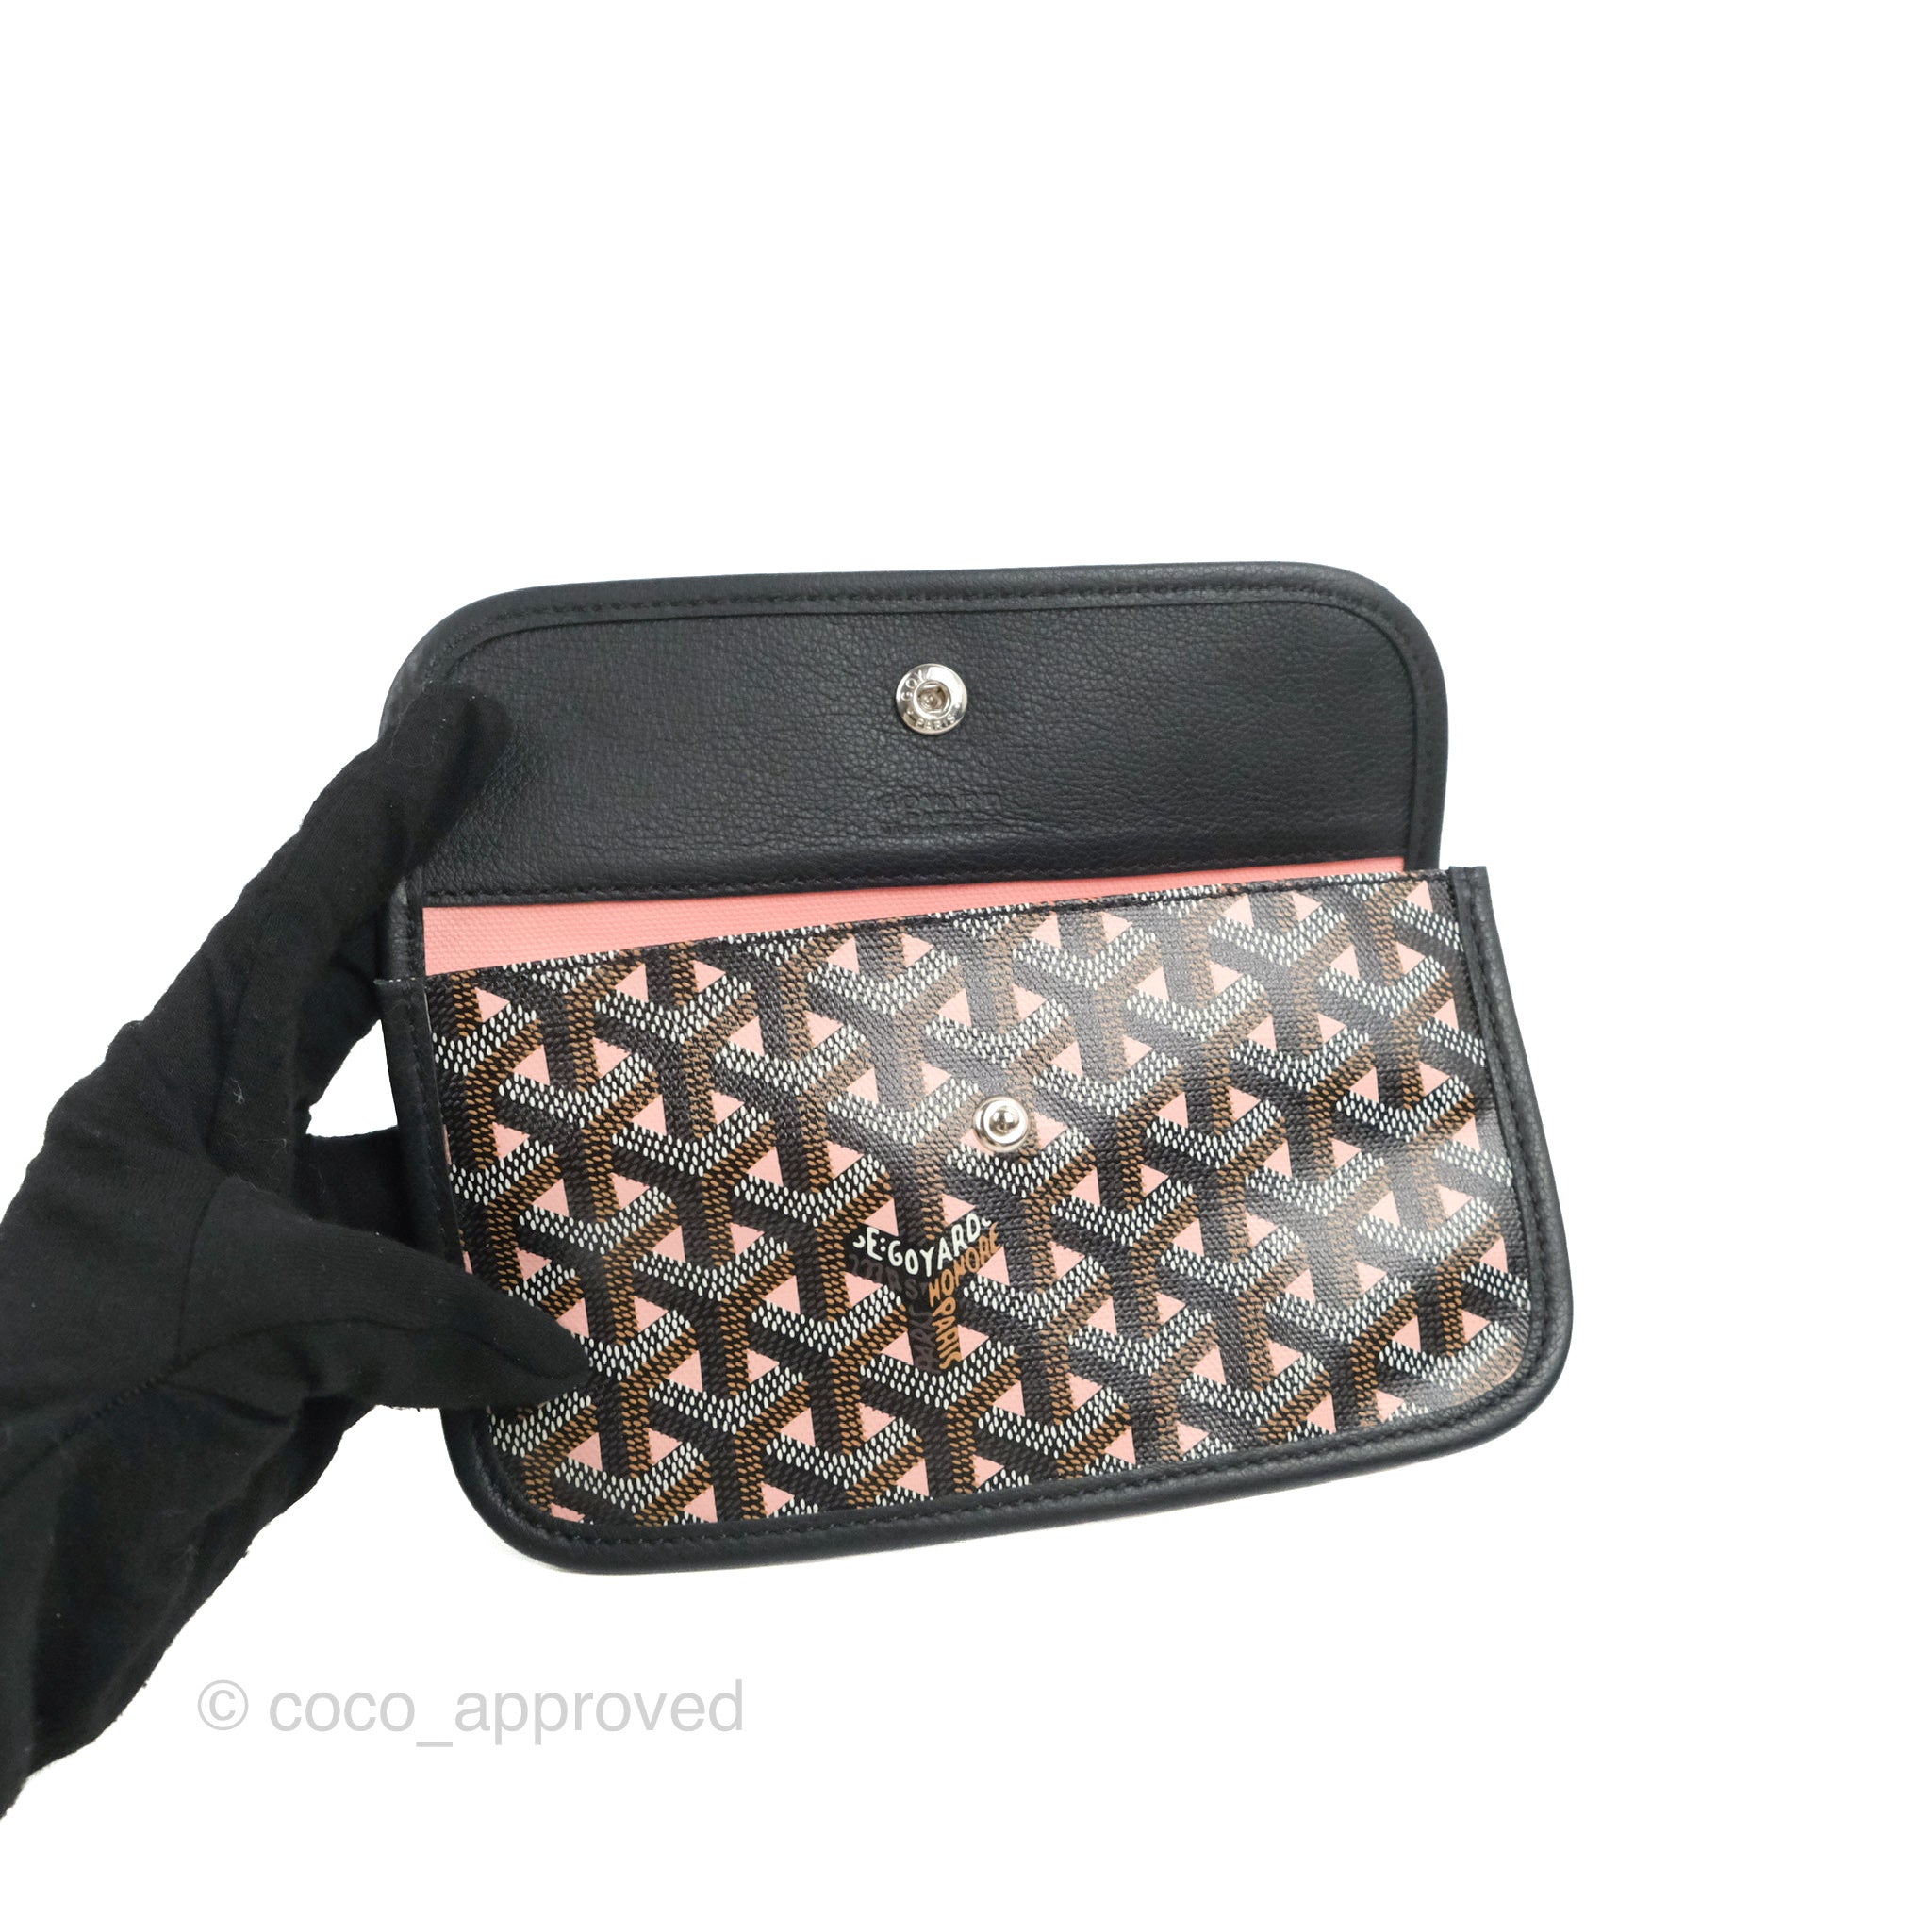 Goyard St Louis PM Tote Bag (Black) – The Luxury Shopper